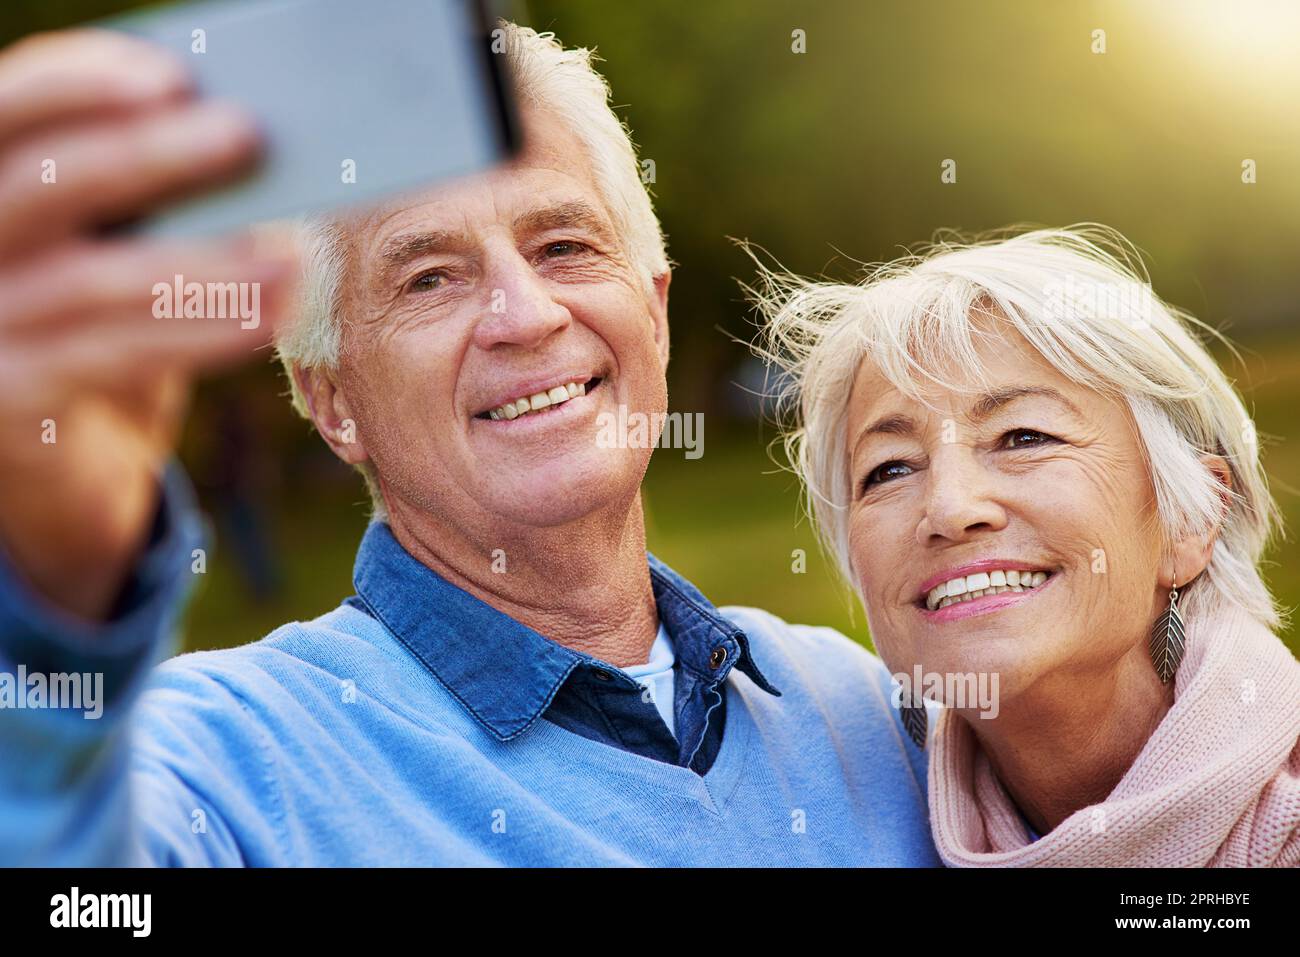 Breites Lächeln für die Aufnahme. Ein Seniorenpaar, das zusammen in einem Park ein Foto gemacht hat. Stockfoto